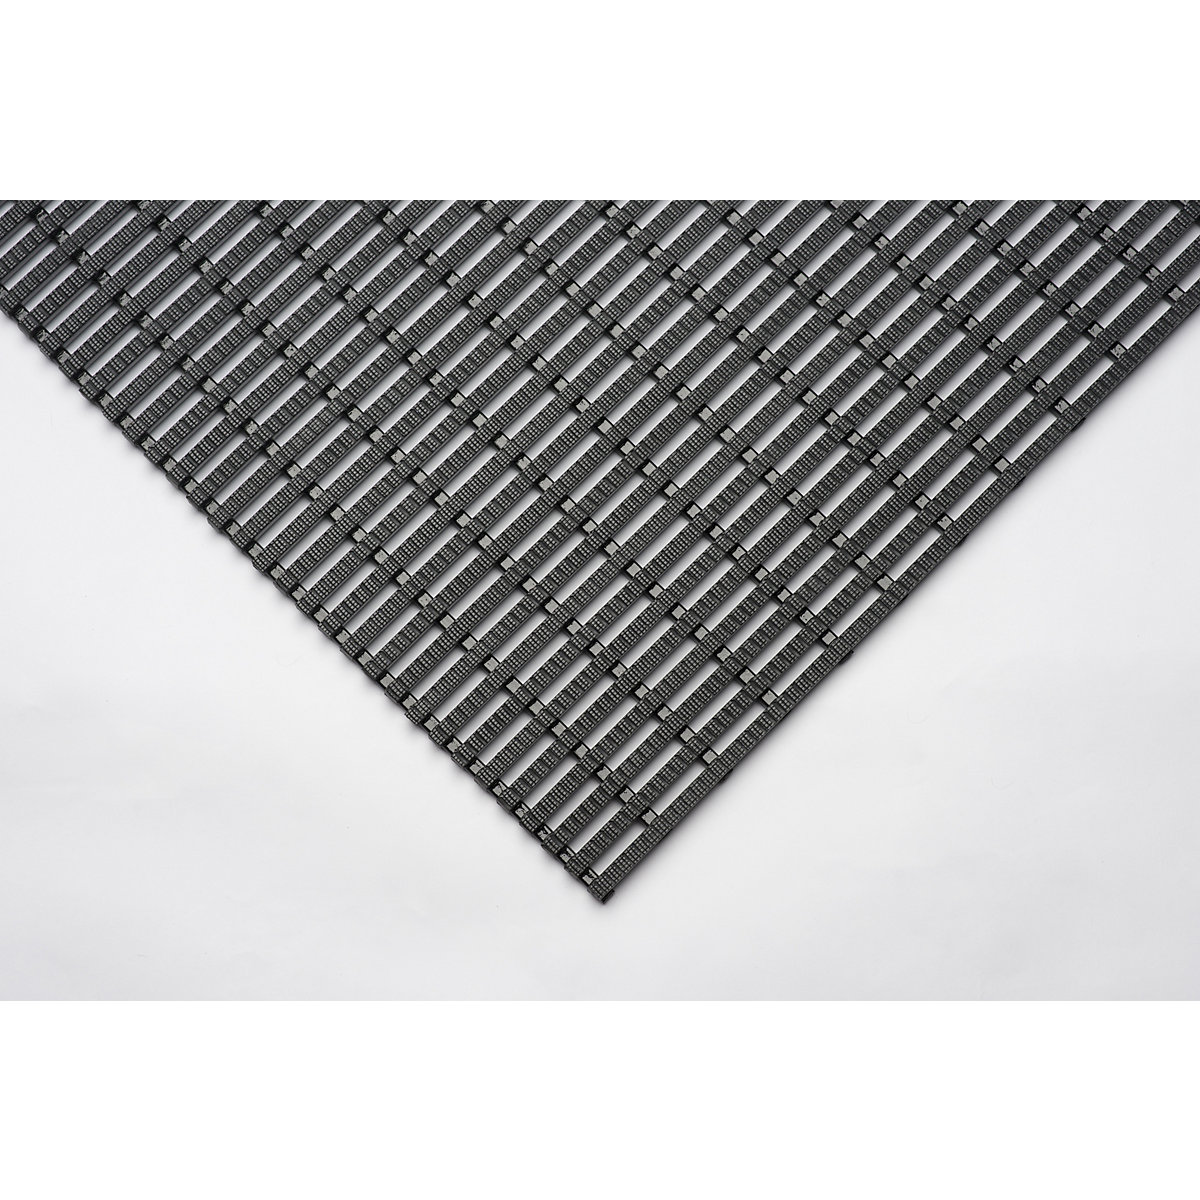 Tapis industriel antidérapant – EHA, rouleau de 10 m, noir, largeur 600 mm-1